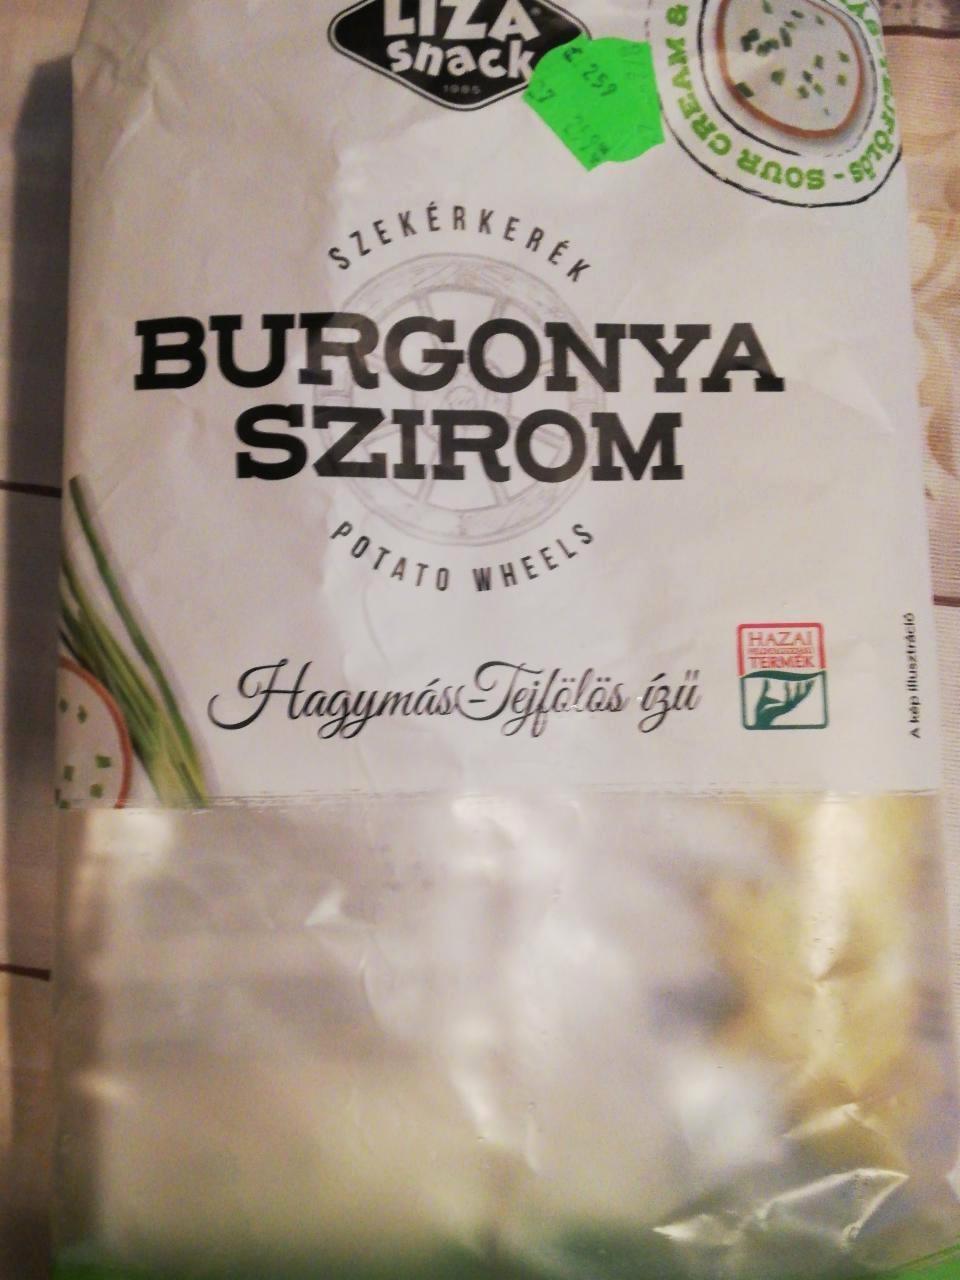 Képek - Hagymás tejfölös ízesítésű burgonyaszirom Liza snack